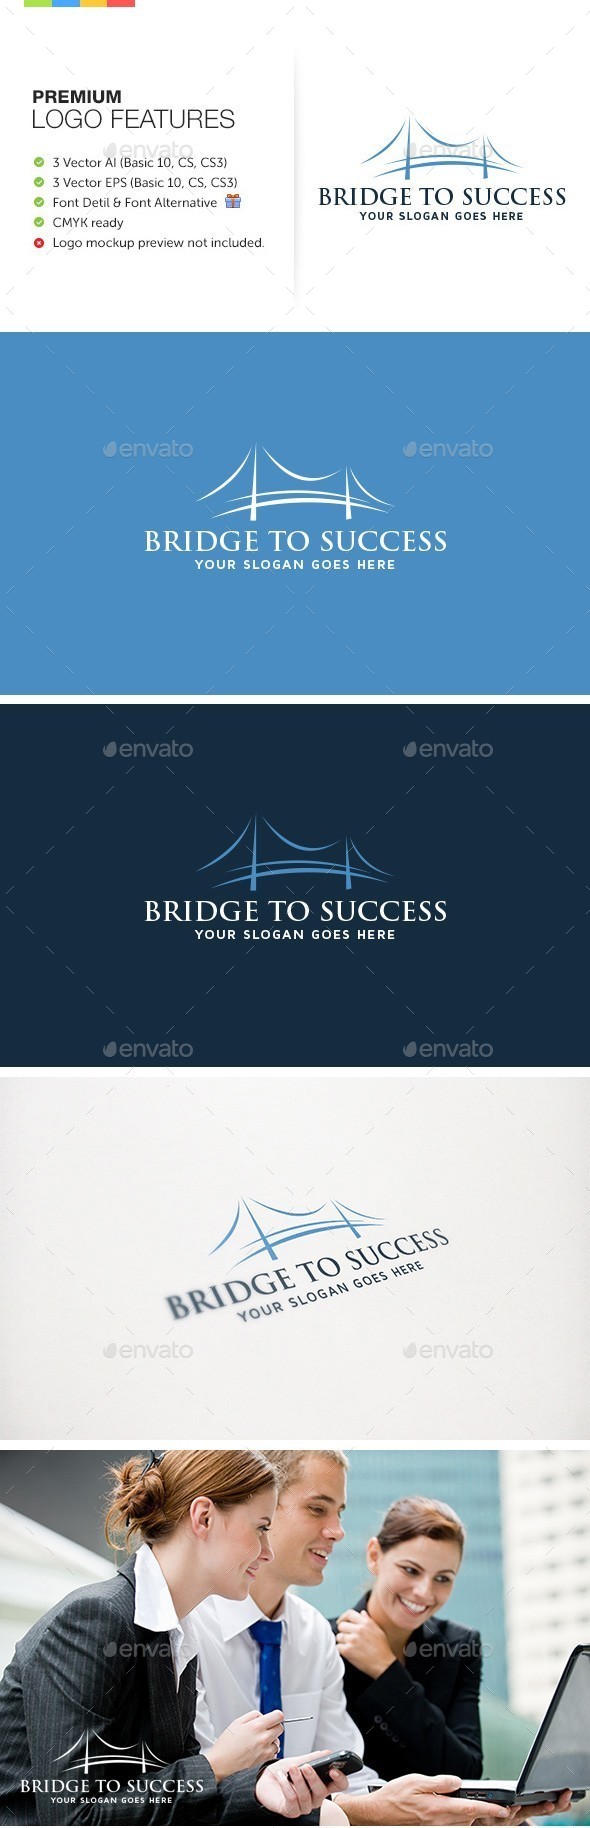 Bridge to Success